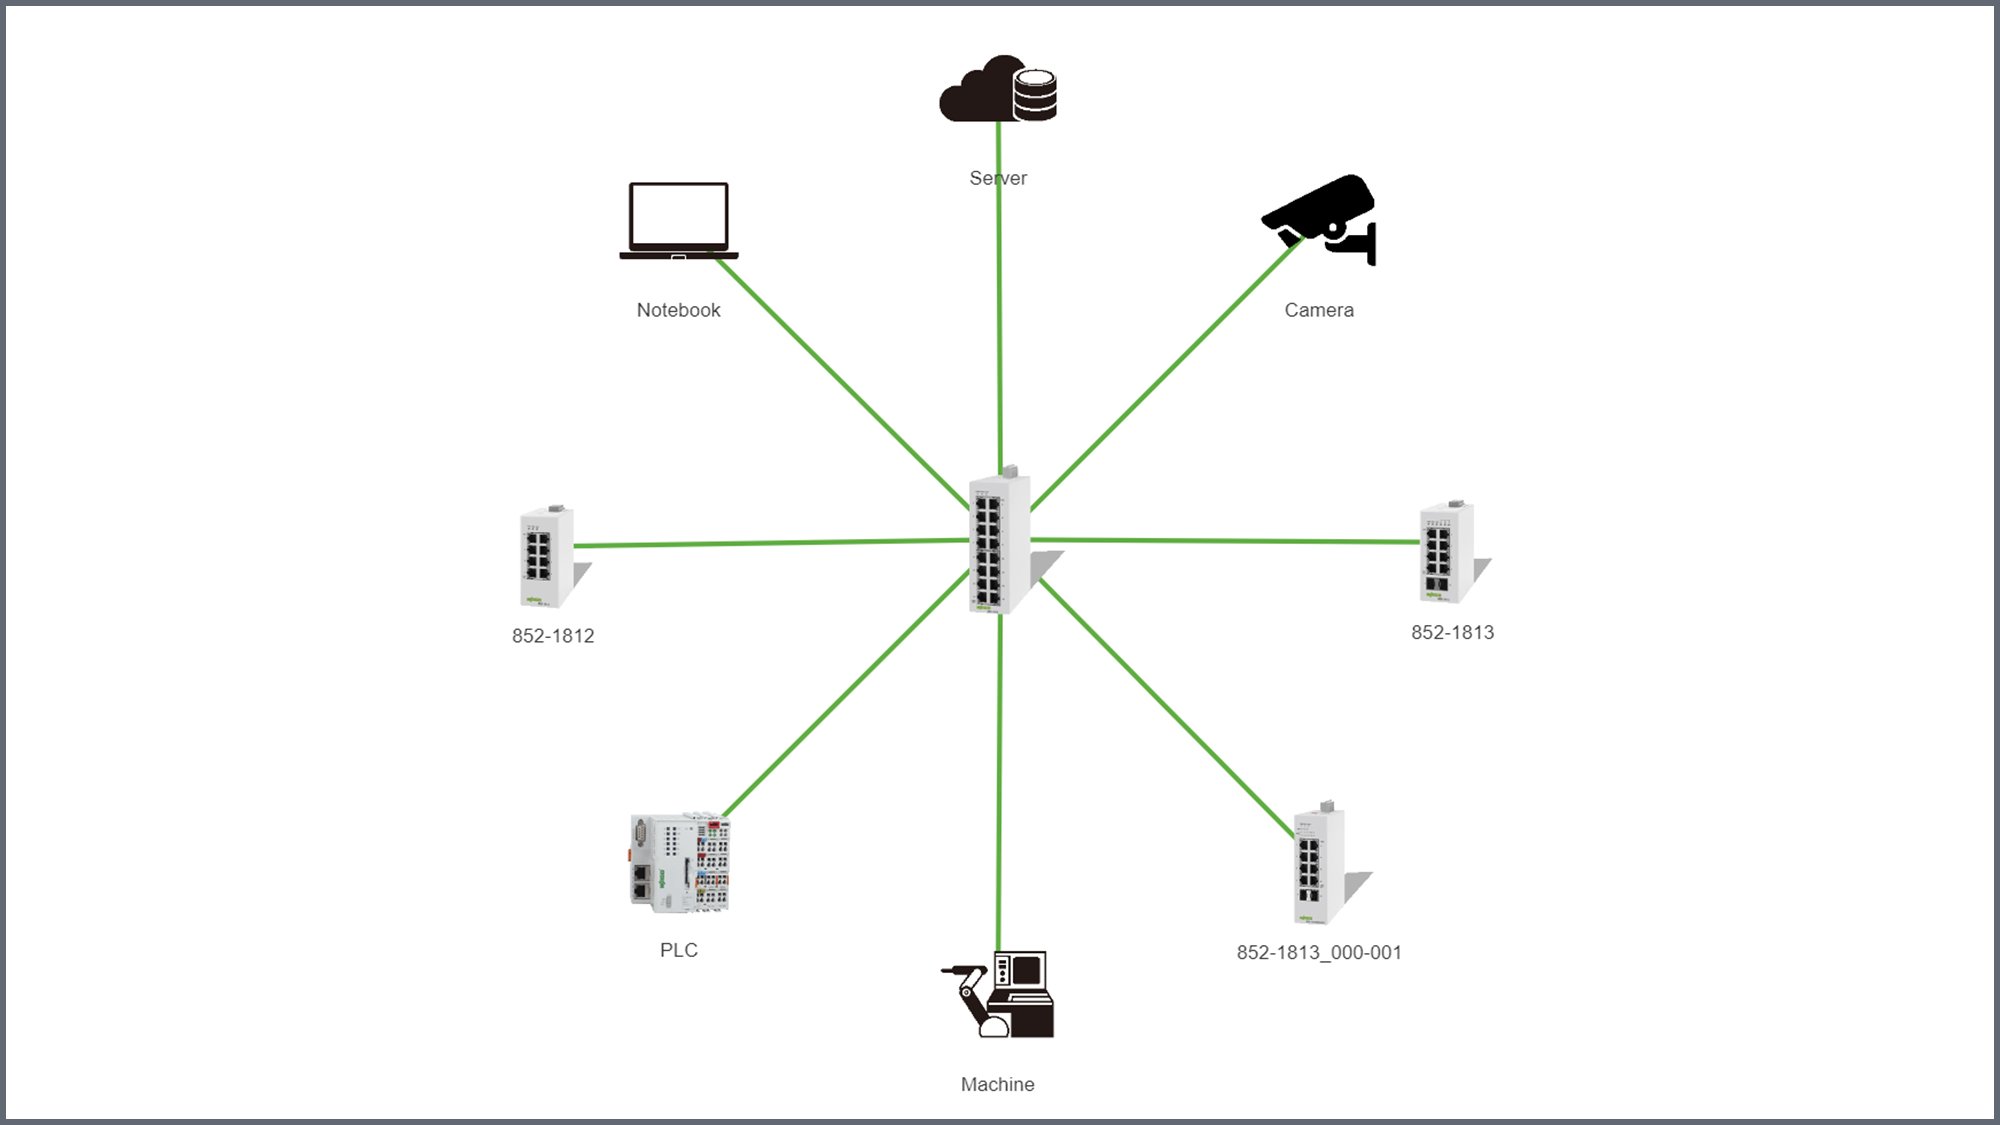 Netzwerkinfrastrukturen und Switches sind elementar für die Gebäude und die Industrie